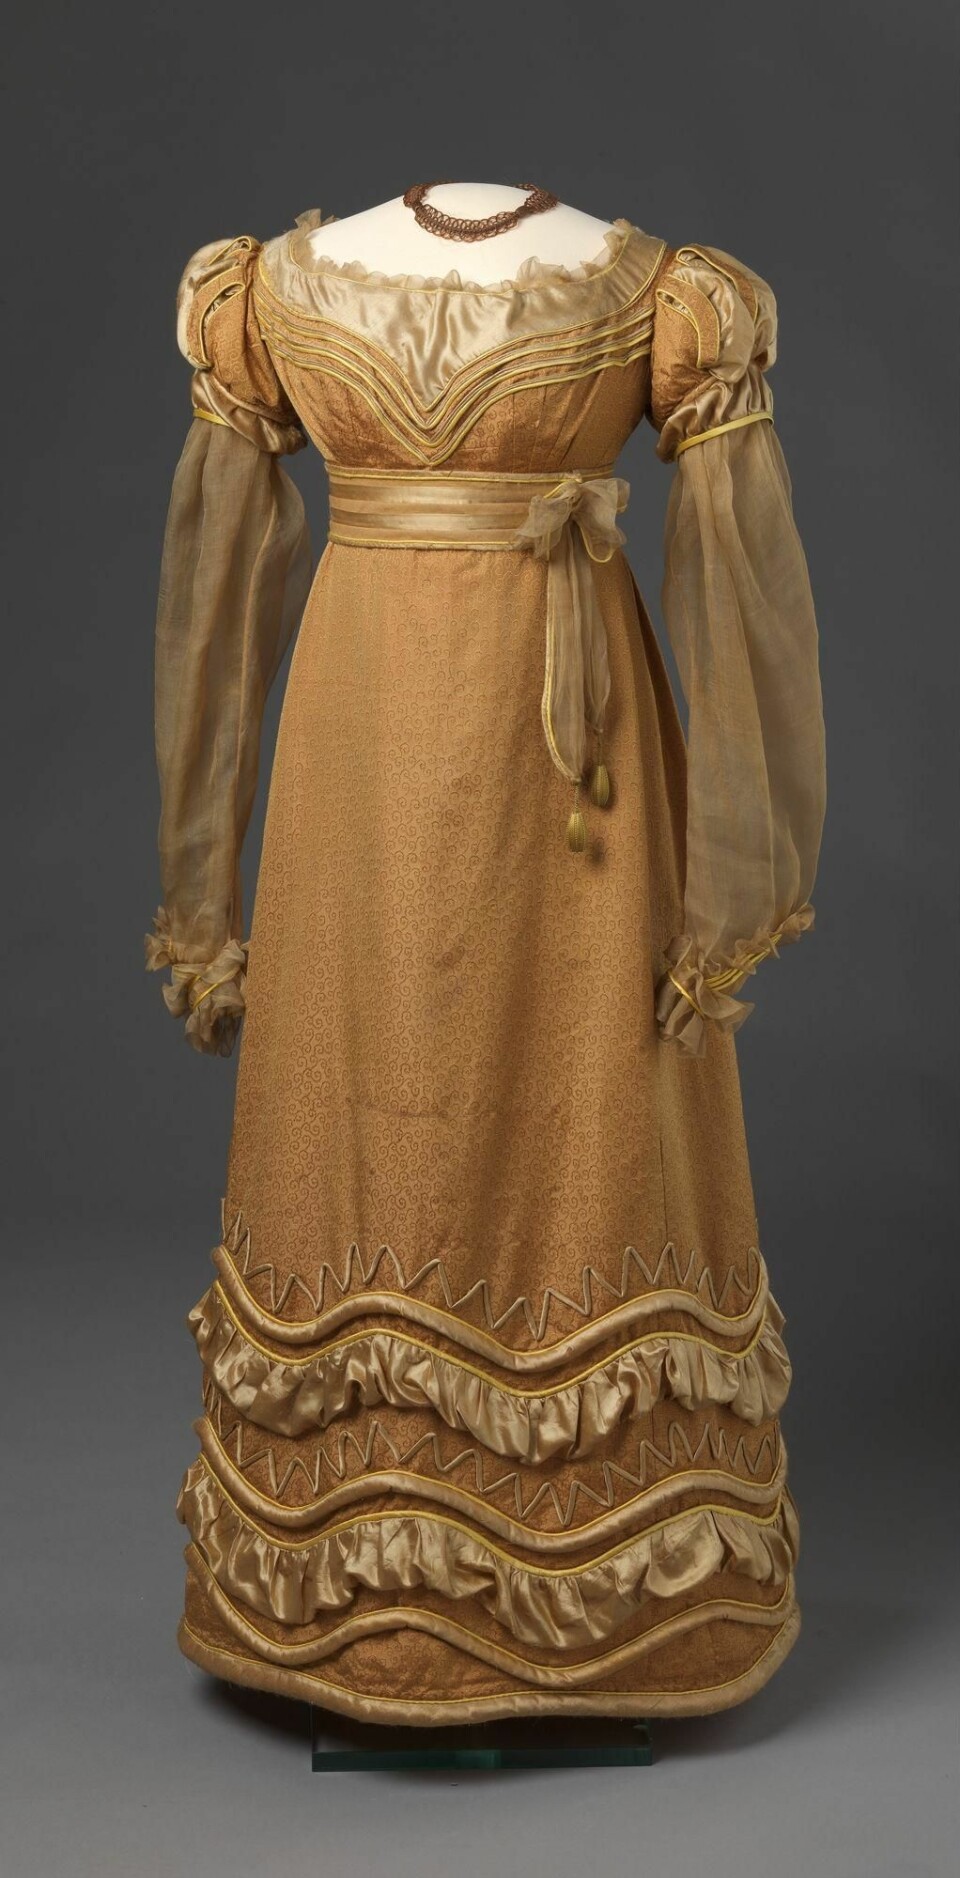 Kjolen er fra 1825 og er antakelig håndsydd av silkestoffer og sateng. (Foto: Nasjonalmuseet for kunst, arkitektur og design)